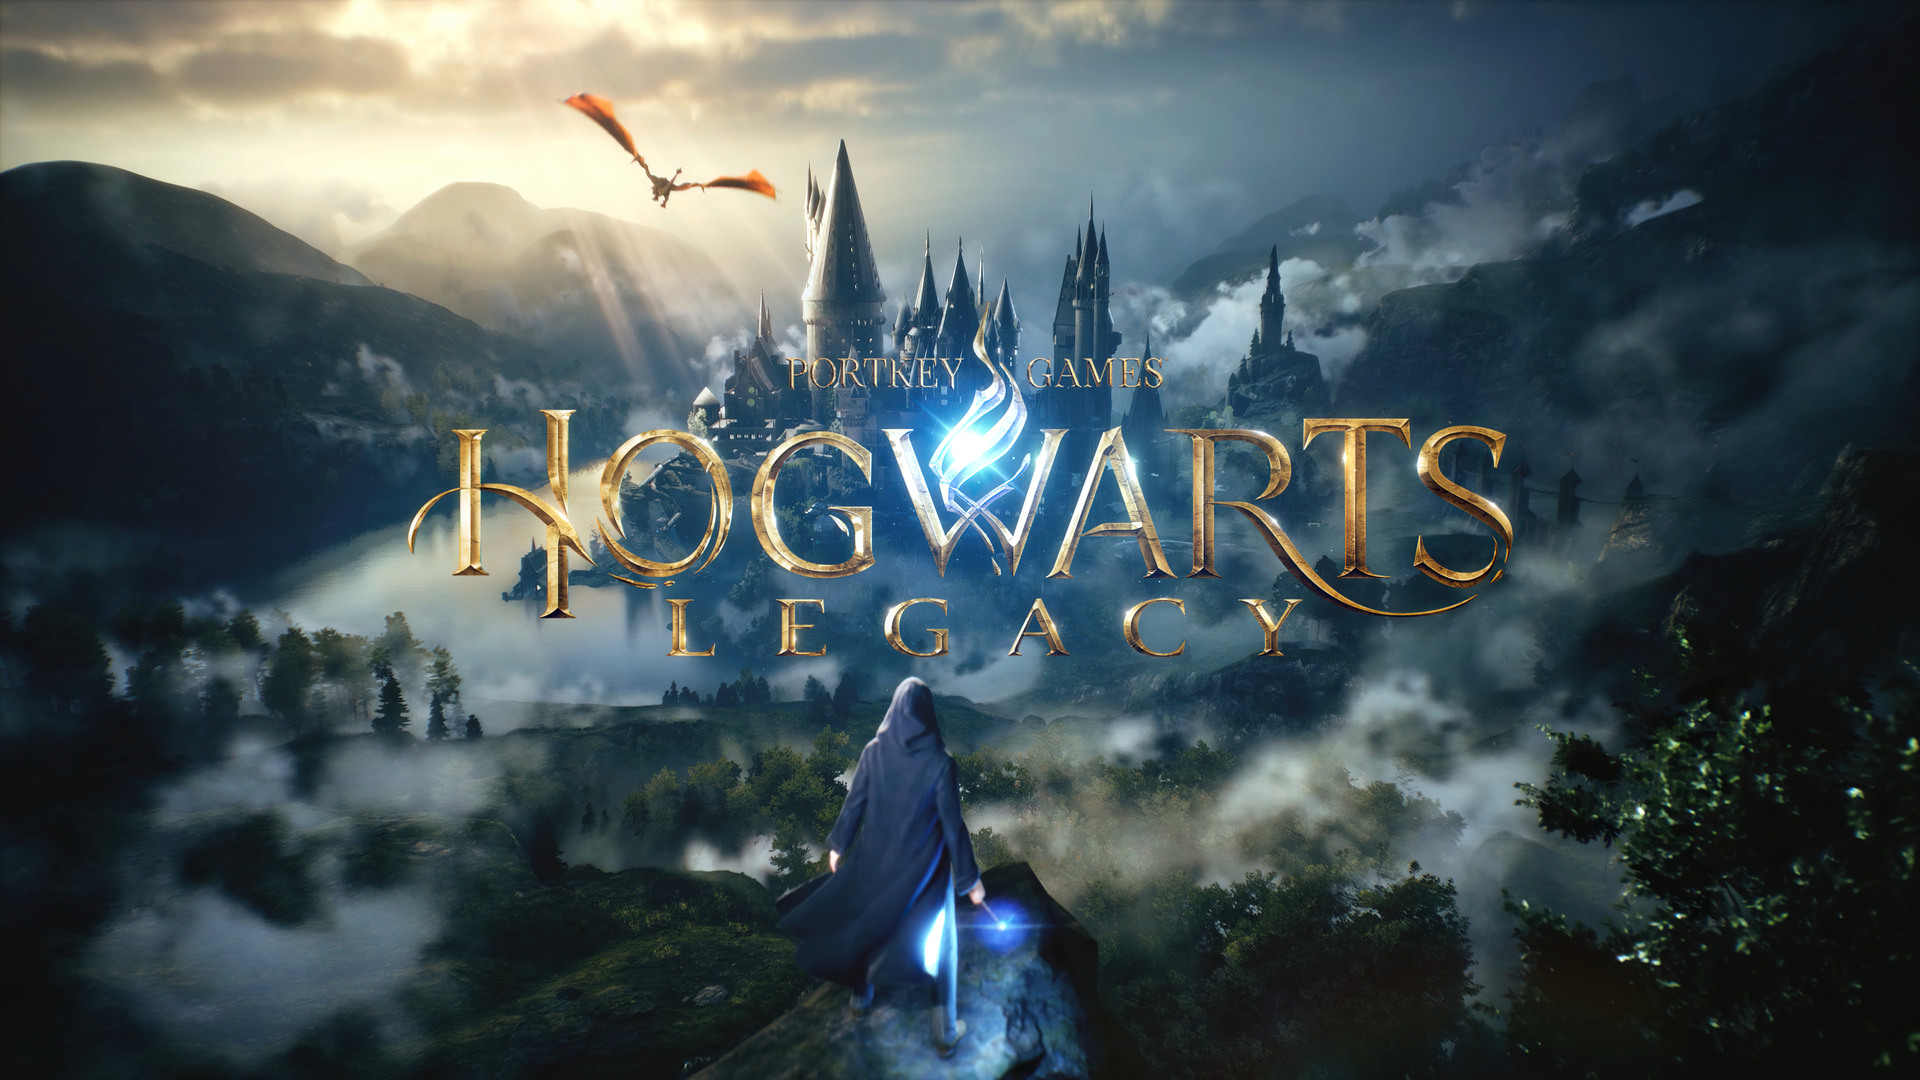 Warner Bros. บอกใบ้ถึง Hogwarts Legacy ที่อาจจะมีกำหนดวางจำหน่ายช่วงครึ่งหลังปี 2022